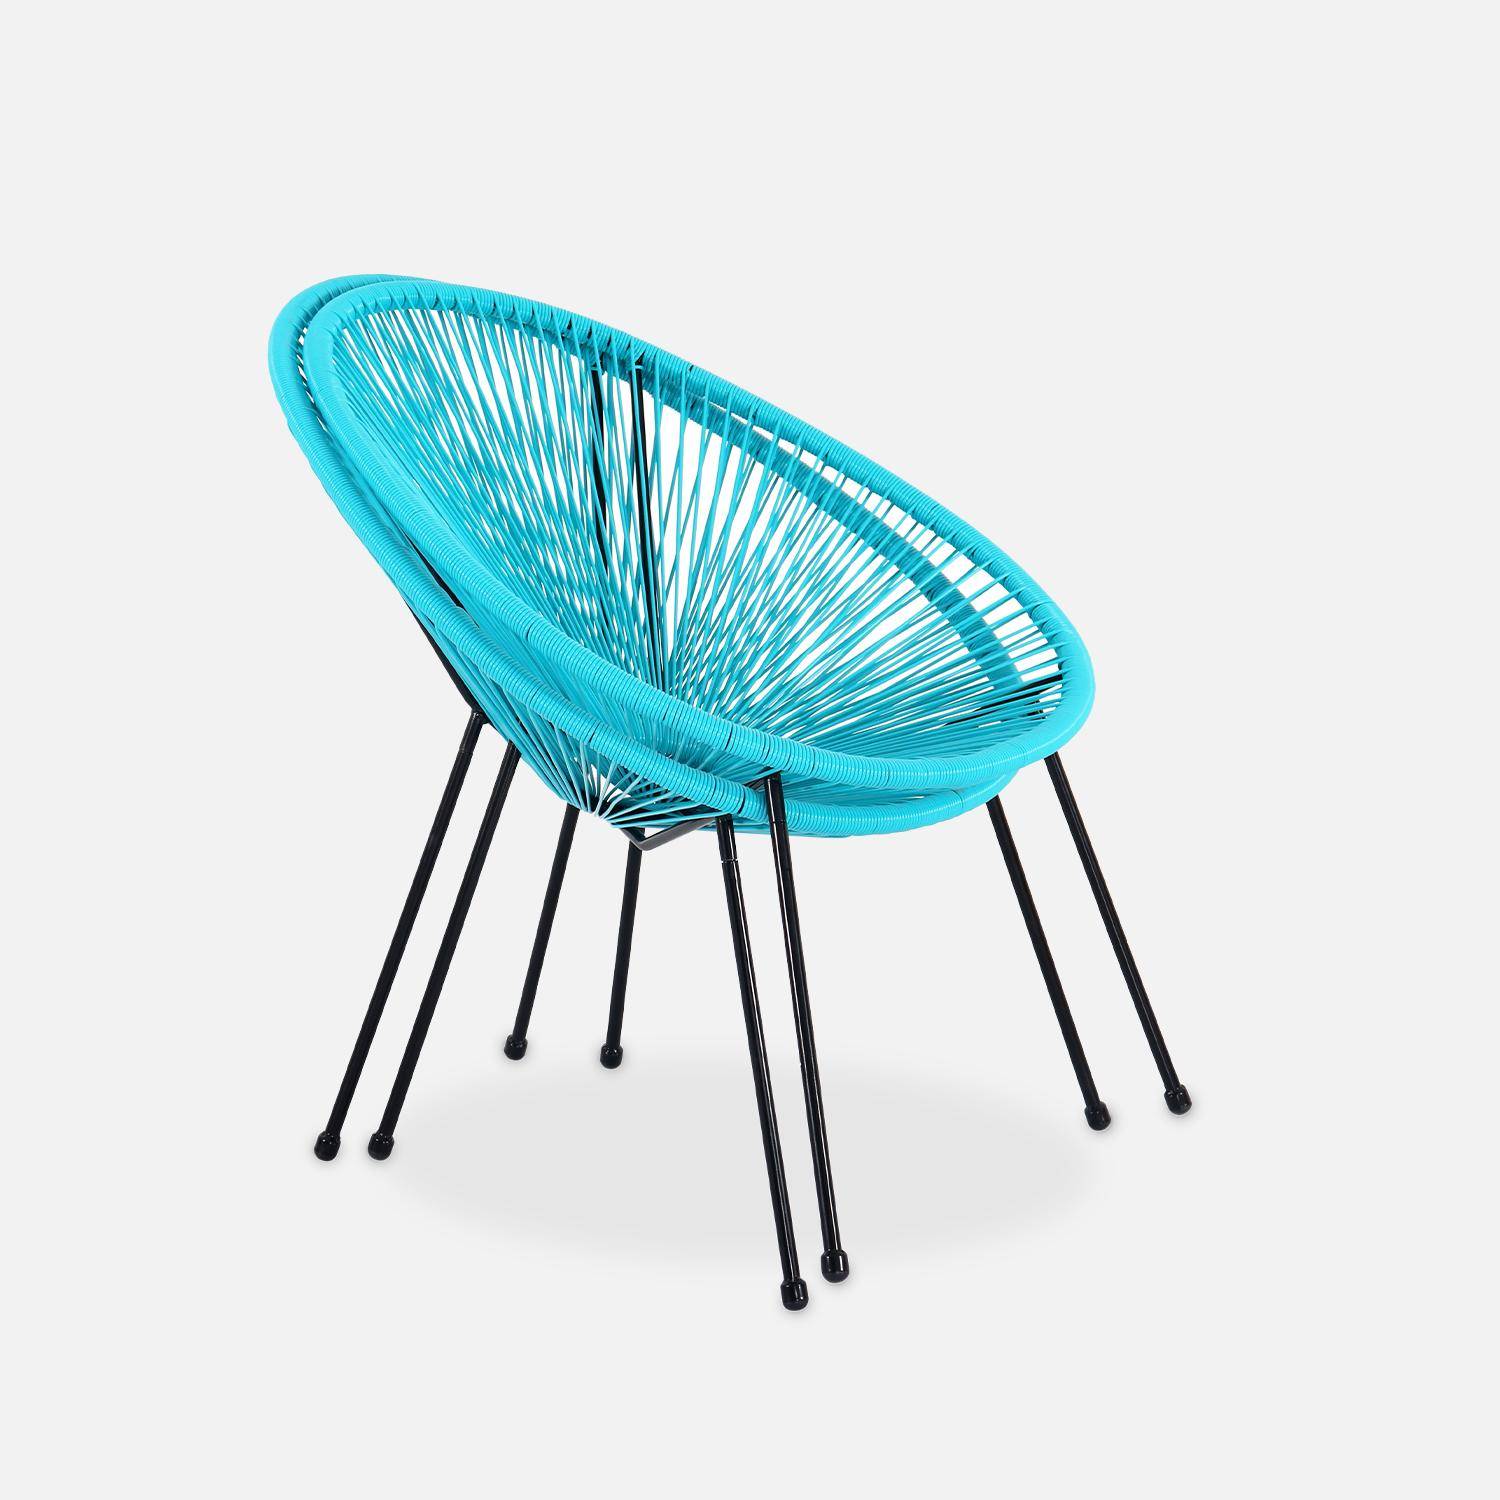 Lot de 2 fauteuils design Oeuf - Acapulco Turquoise - Fauteuils 4 pieds design rétro, cordage plastique, intérieur / extérieur Photo4